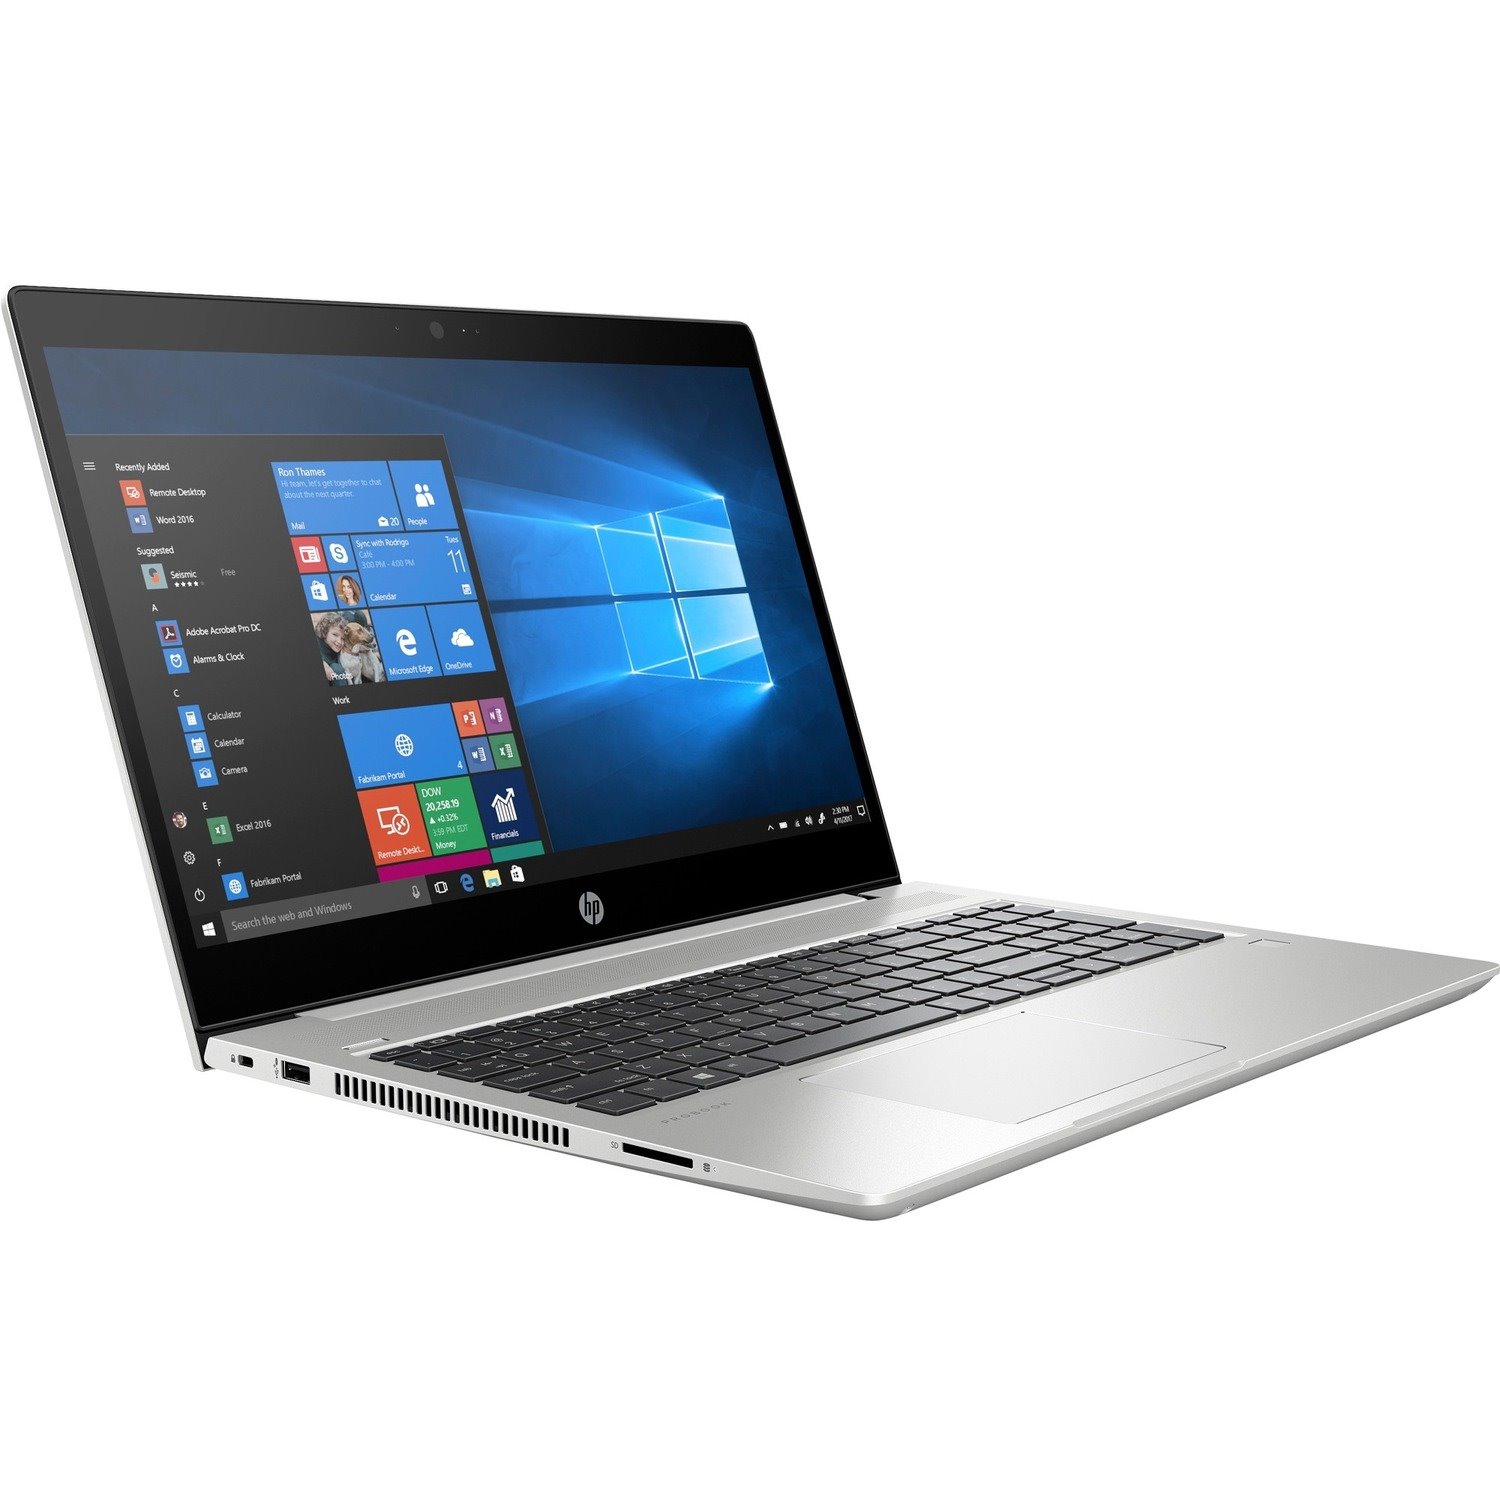 HP ProBook 455R G6 39.6 cm (15.6") Notebook - Full HD - 1920 x 1080 - AMD Ryzen 5 3500U Quad-core (4 Core) 2.10 GHz - 8 GB Total RAM - 256 GB SSD - Pike Silver Aluminum